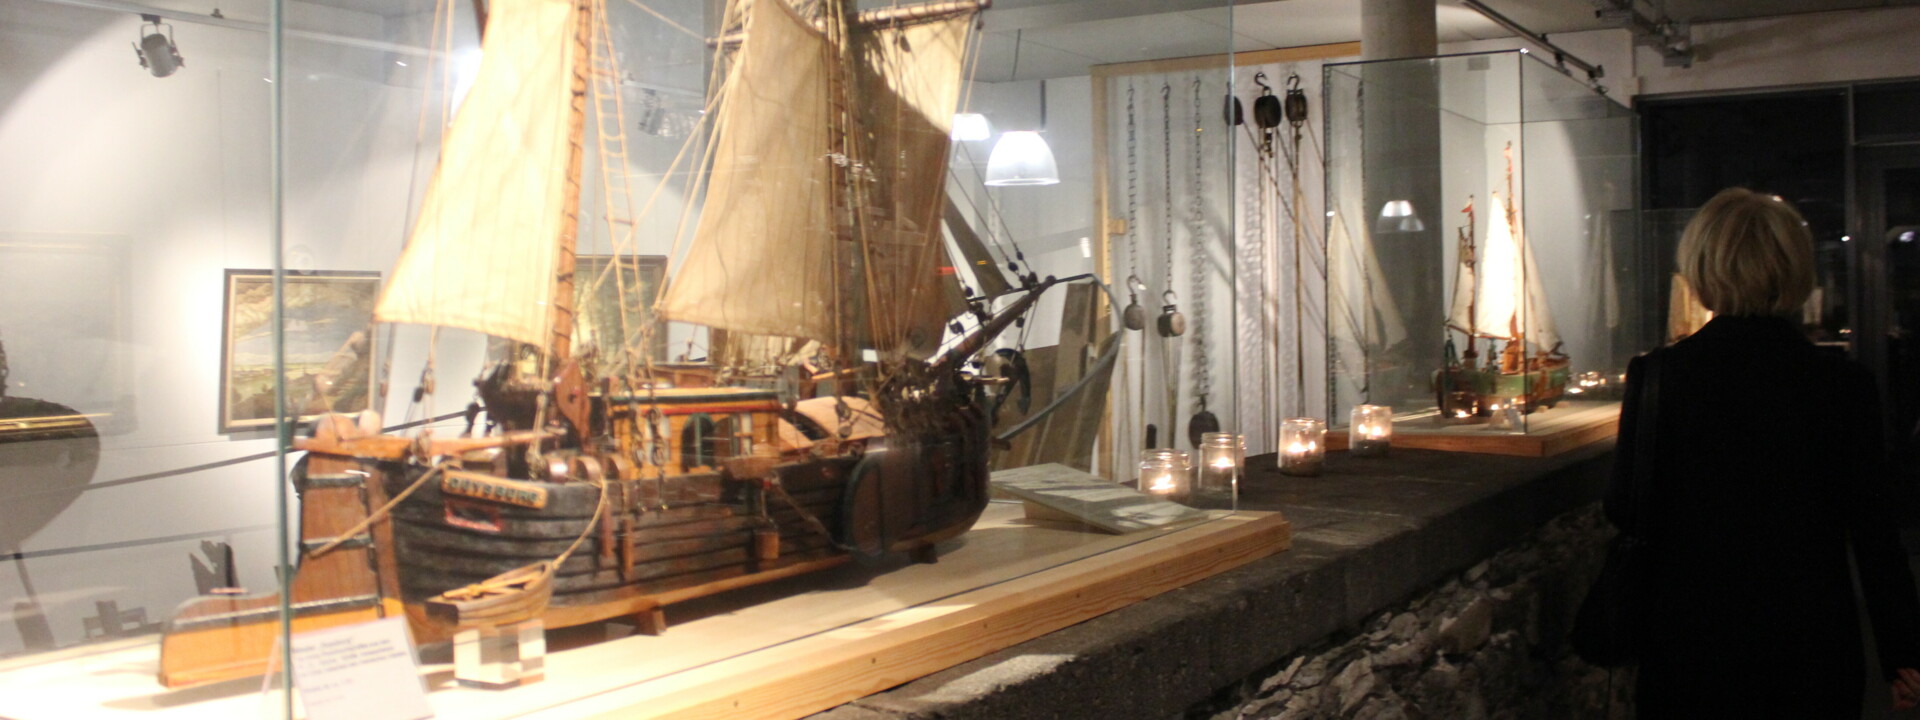 Ausstellung eines mittelalterlichen Schiffes im Rhein-Museum ©Koblenz-Touristik GmbH